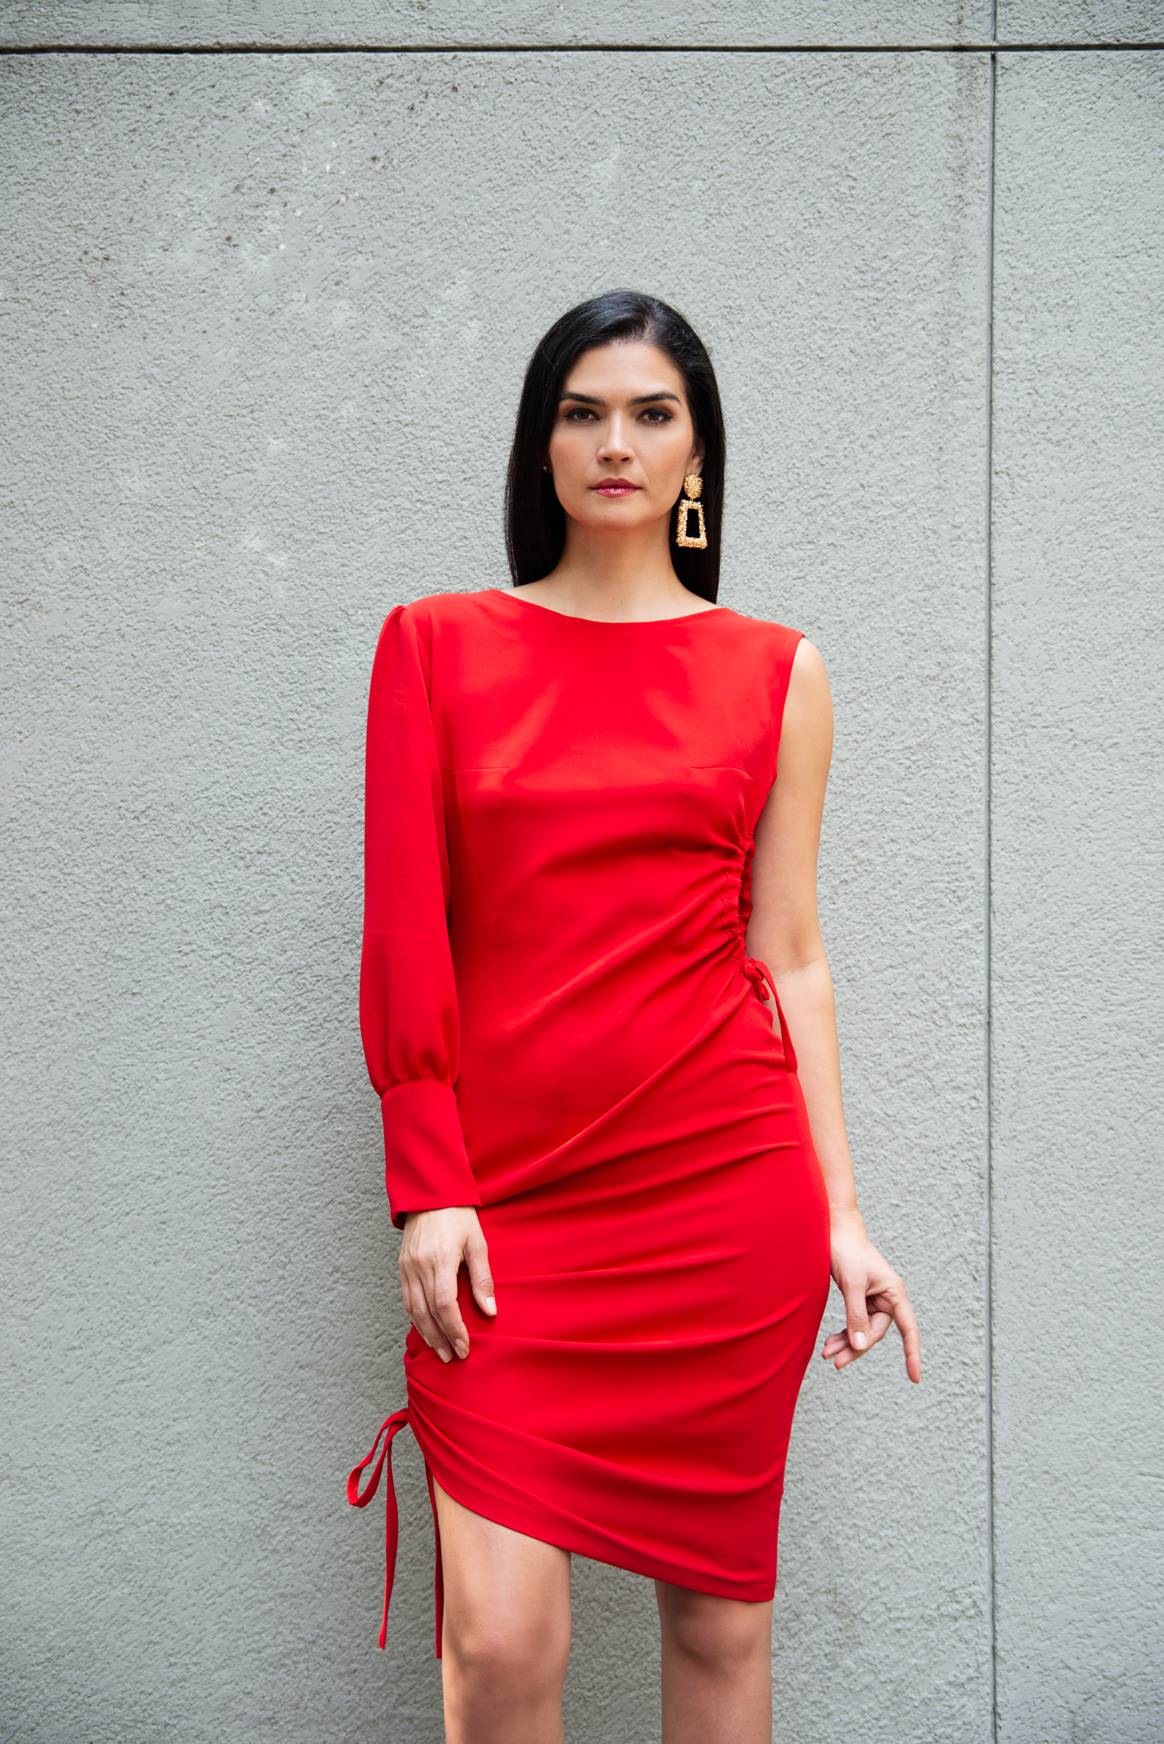 Vestido rojo de crepé con elastano, corte asimétrico, de una sola manga ligeramente abullonada, con una apertura en un costado, y escote redondo hasta la media espalda